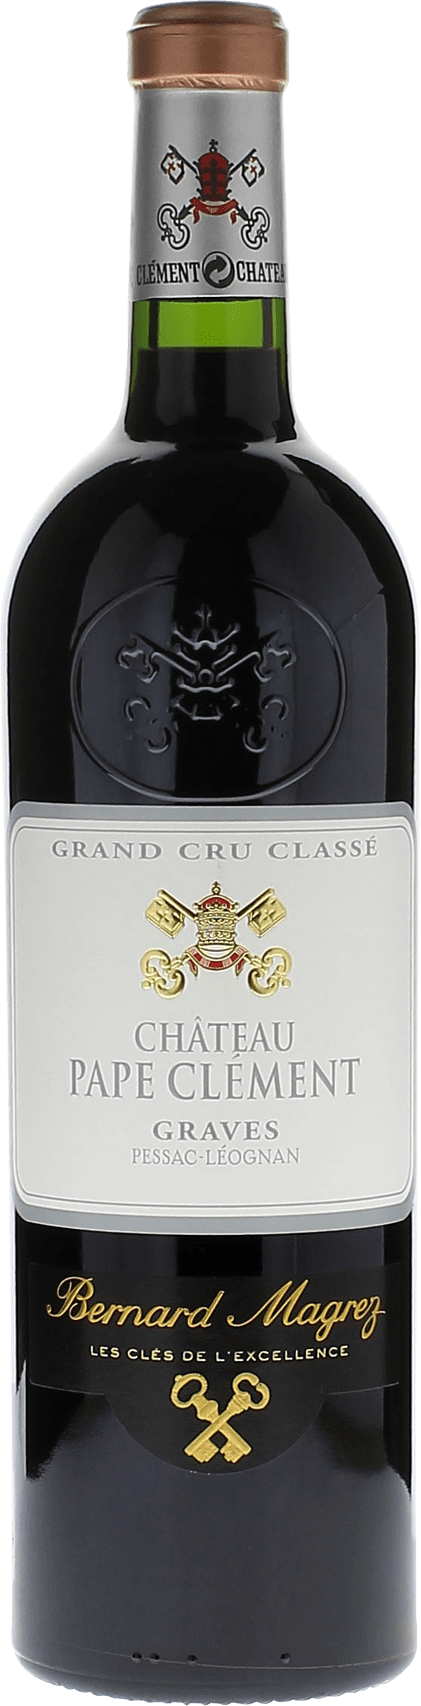 Pape clement rouge 2018 Grand Cru Class Graves, Bordeaux rouge